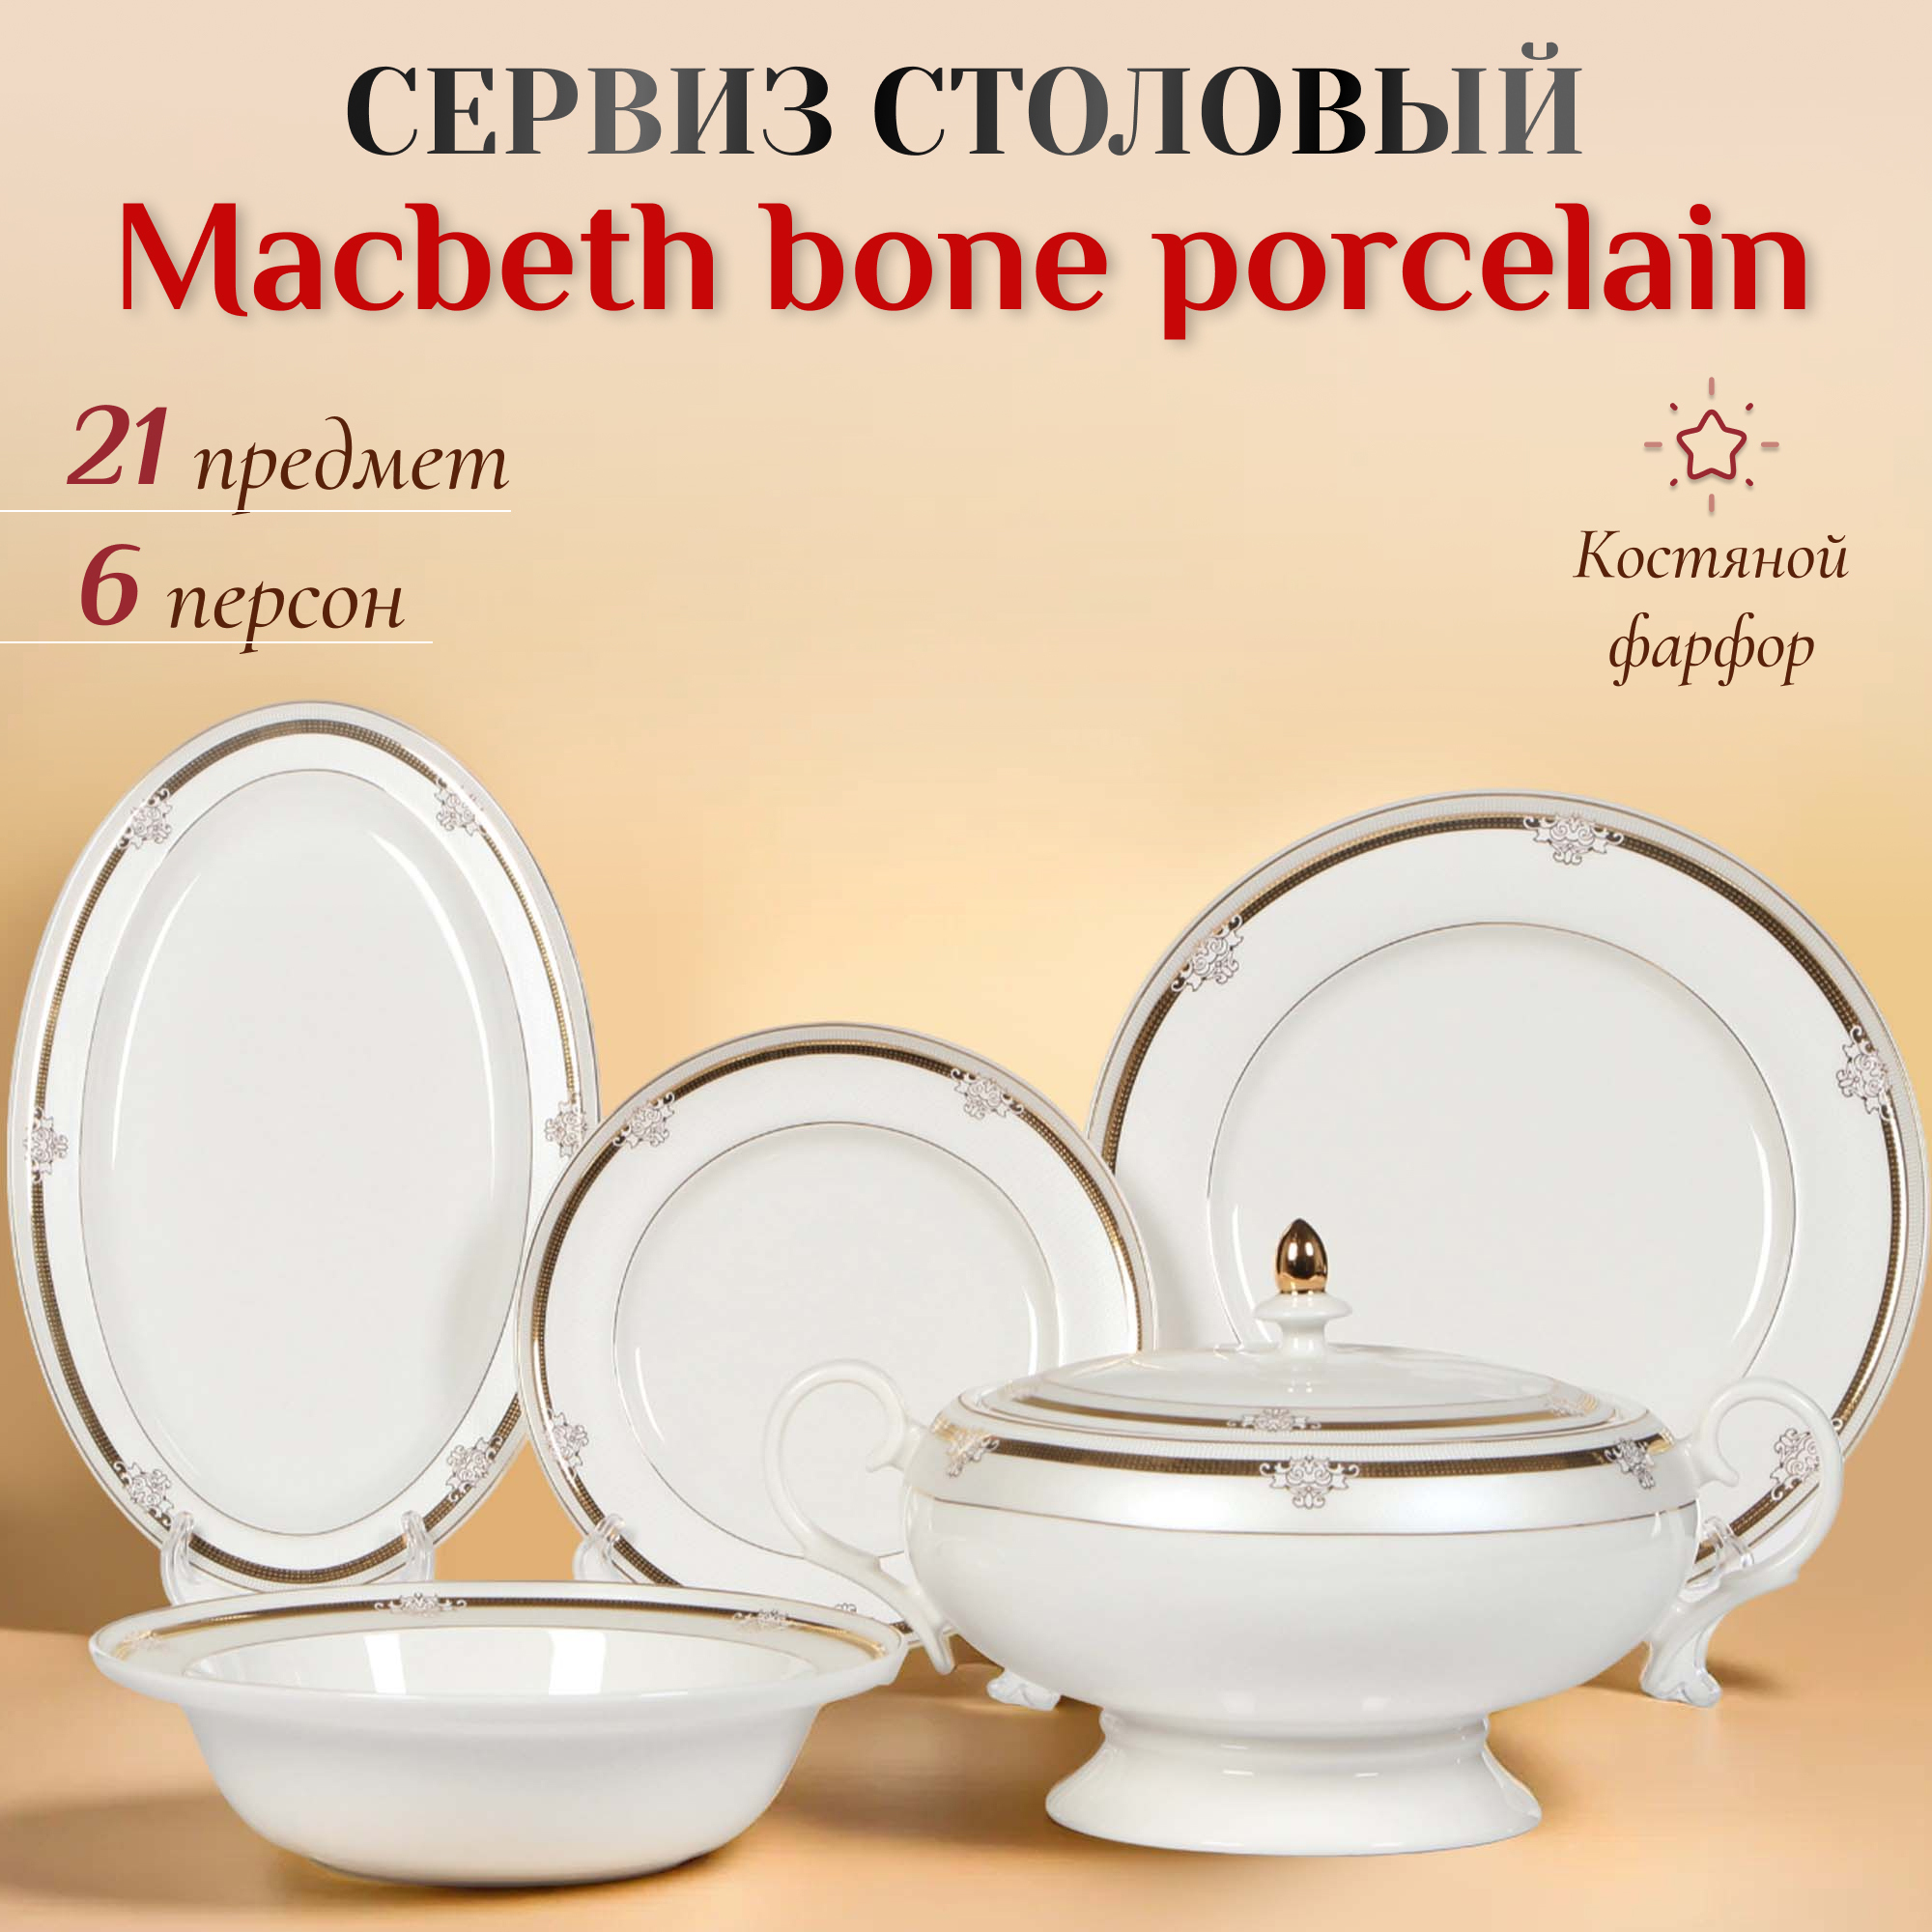 Сервиз столовый Macbeth bone porcelain Elizabeth 21 предмет 6 персон, цвет белый - фото 2